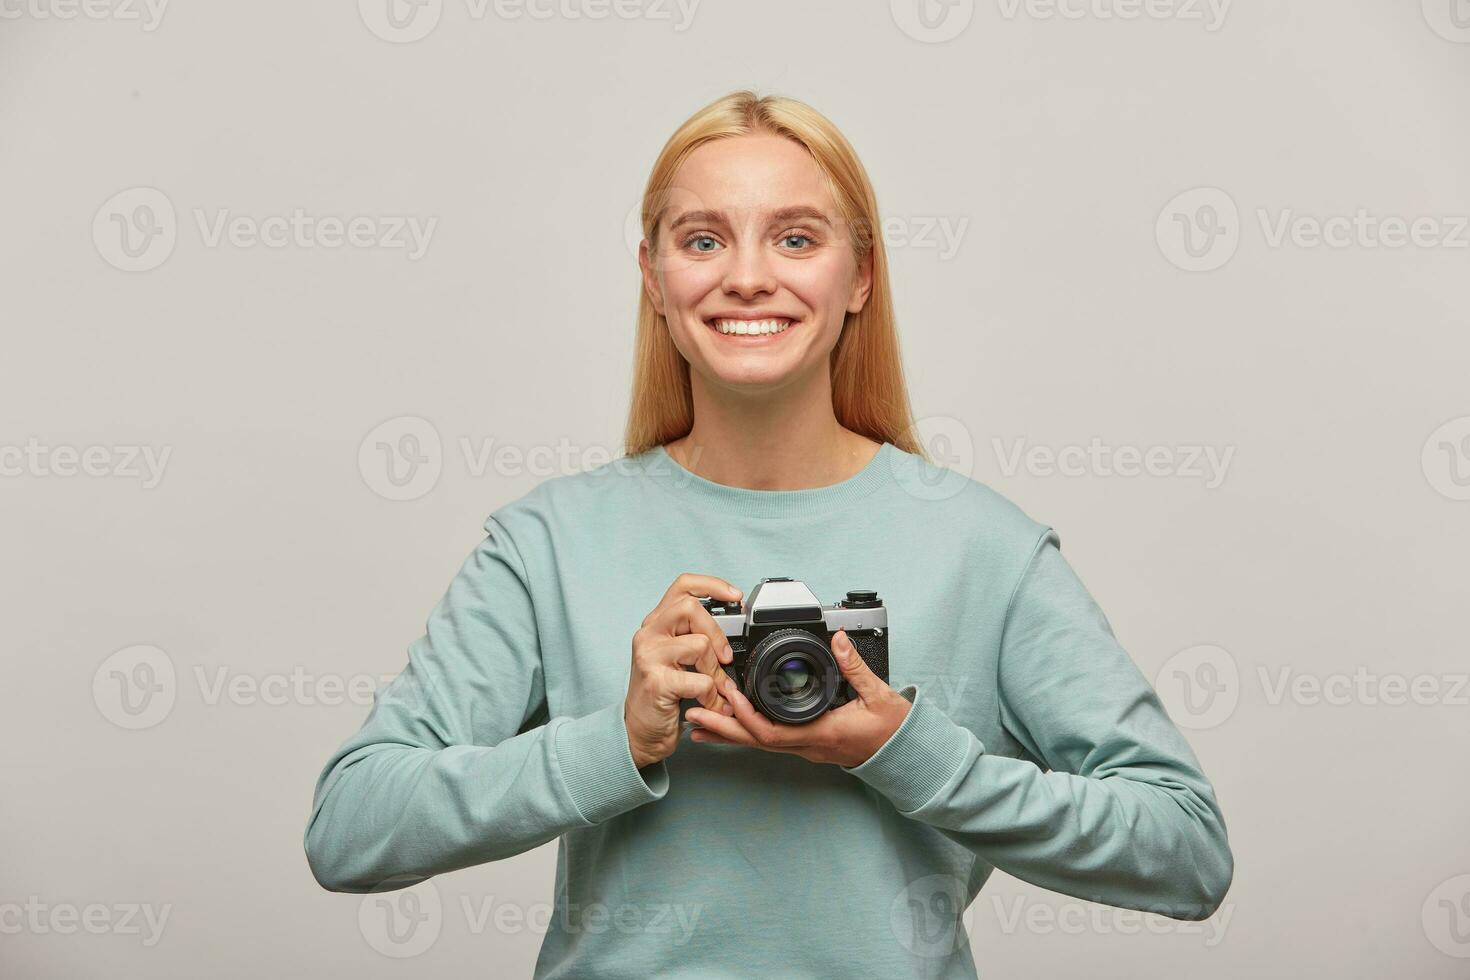 emotioneel blond fotograaf, looks geïnspireerd verheugd, Holding in voorkant een retro wijnoogst foto camera in handen, gekleed in blauw gewoontjes trui, Aan grijs achtergrond